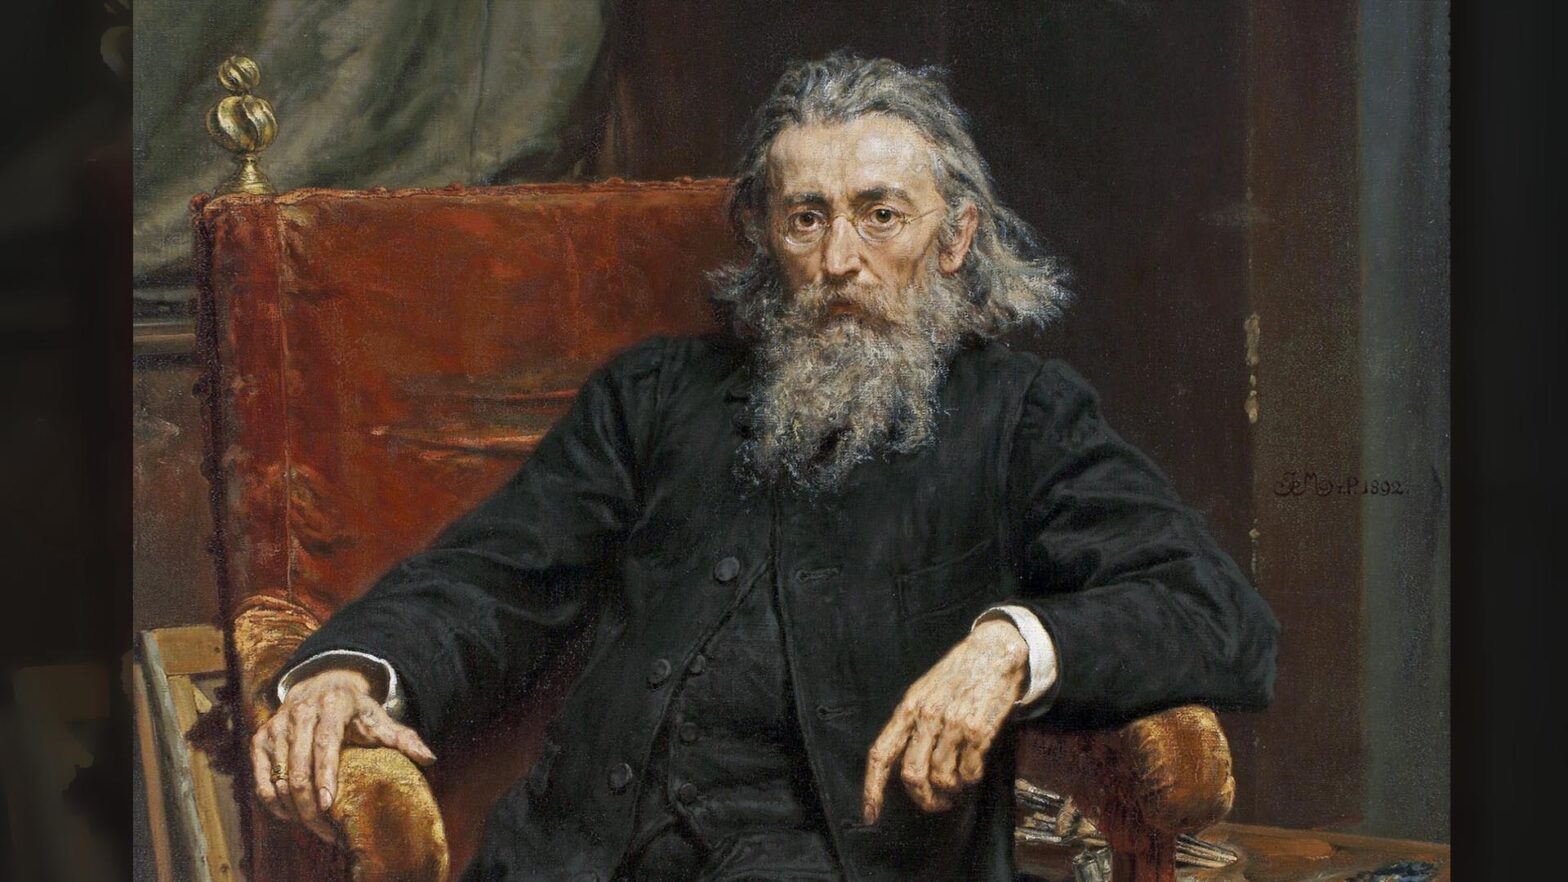 Obraz olejny Autoportret Jana Matejki. Starszy mężczyzna siedzi w fotelu, ma długą i zmierzwioną siwą brodę, dlugie włosy zaczesane do tyłu, z przodu lekko łysiejący. Ubrany jest w ciemnoszarą kamizelką i rozpięty surdut. Fotel jest obity brązową tkaniną